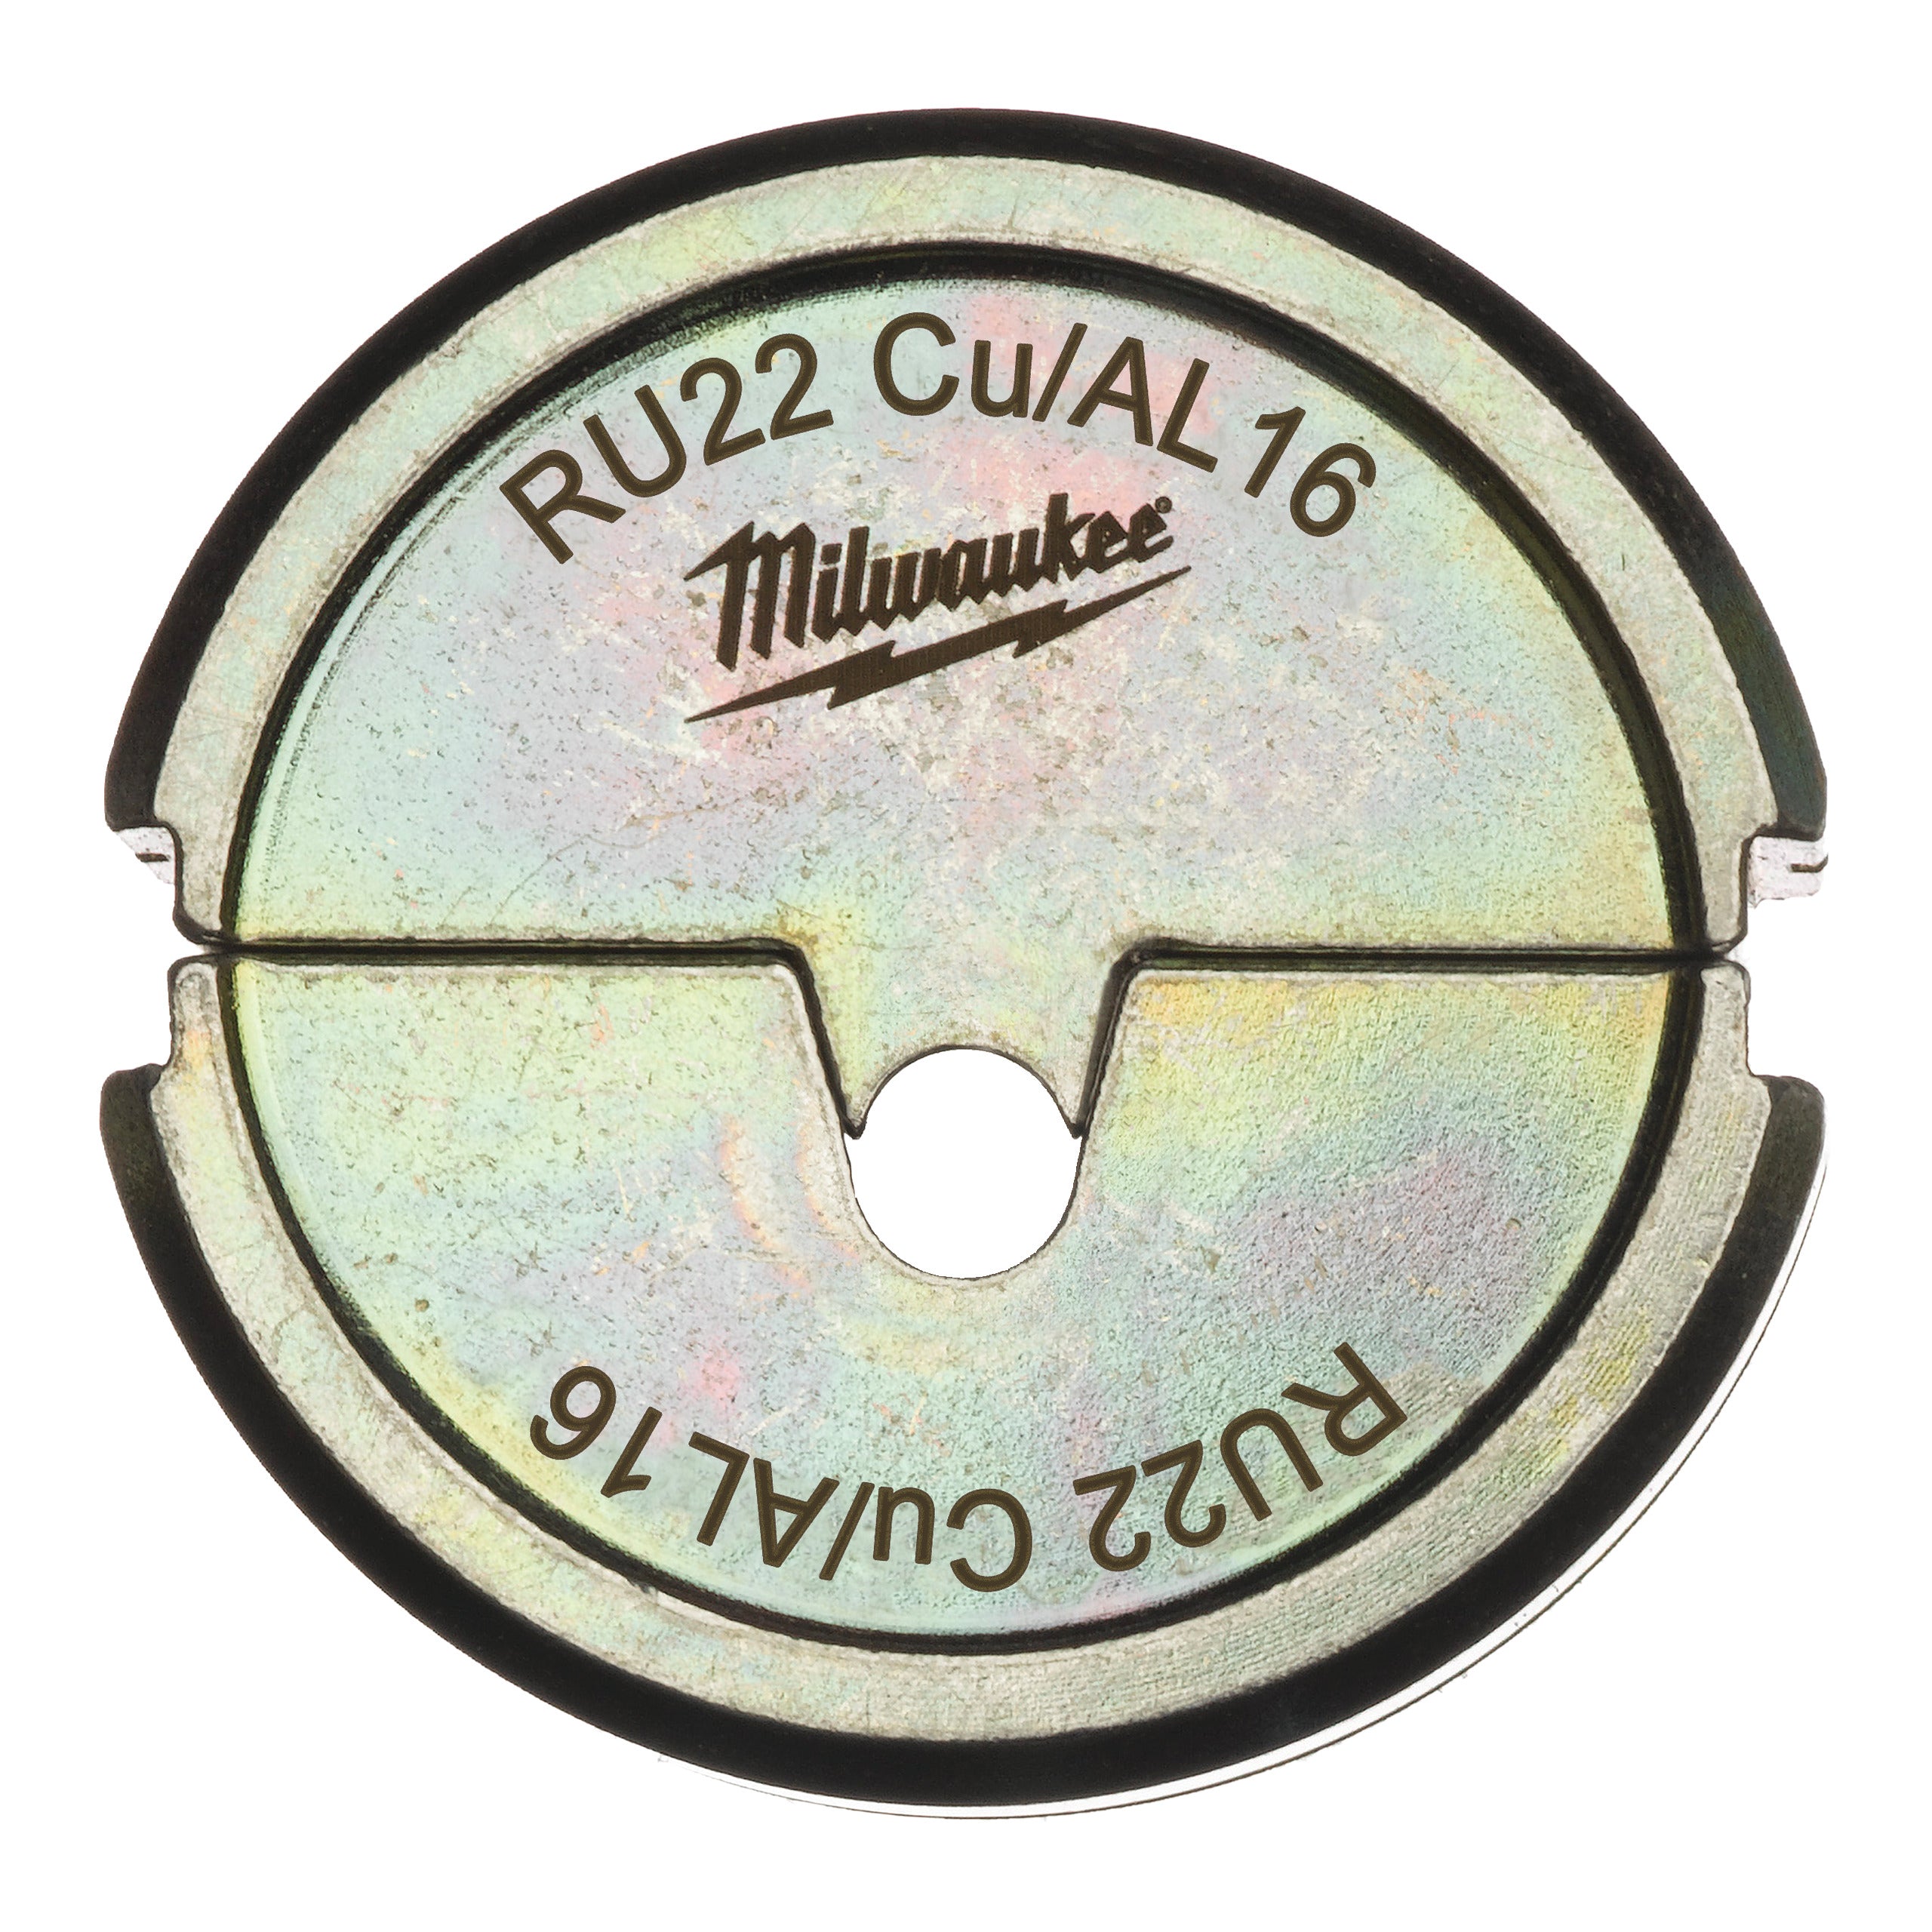 Bacuri de sertizare RU22 CU/AL 16 Milwaukee, cod 4932451780